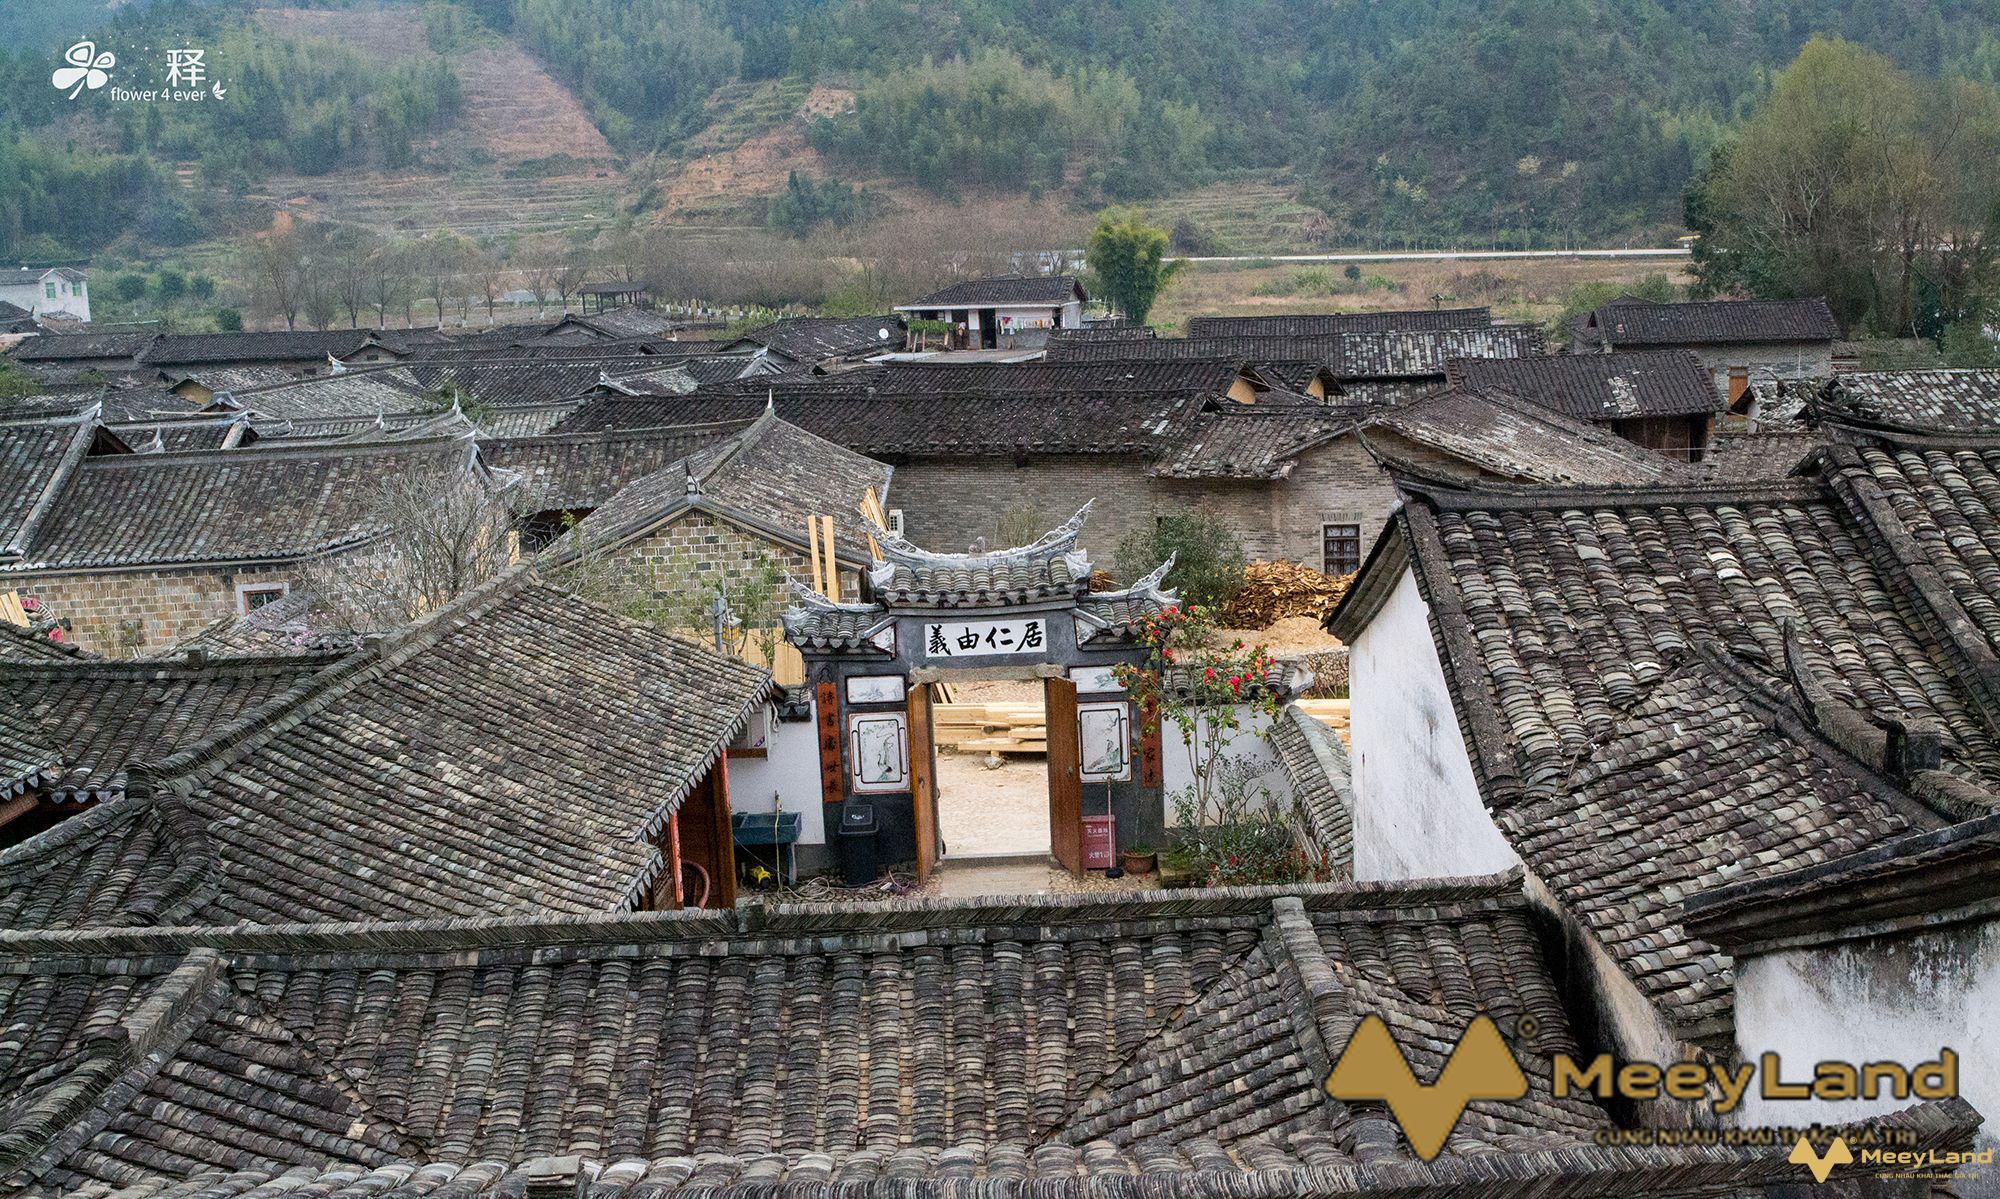 
Kiến trúc nhà cổ Trung Quốc tuyệt đẹp với những đường nét châu Á
